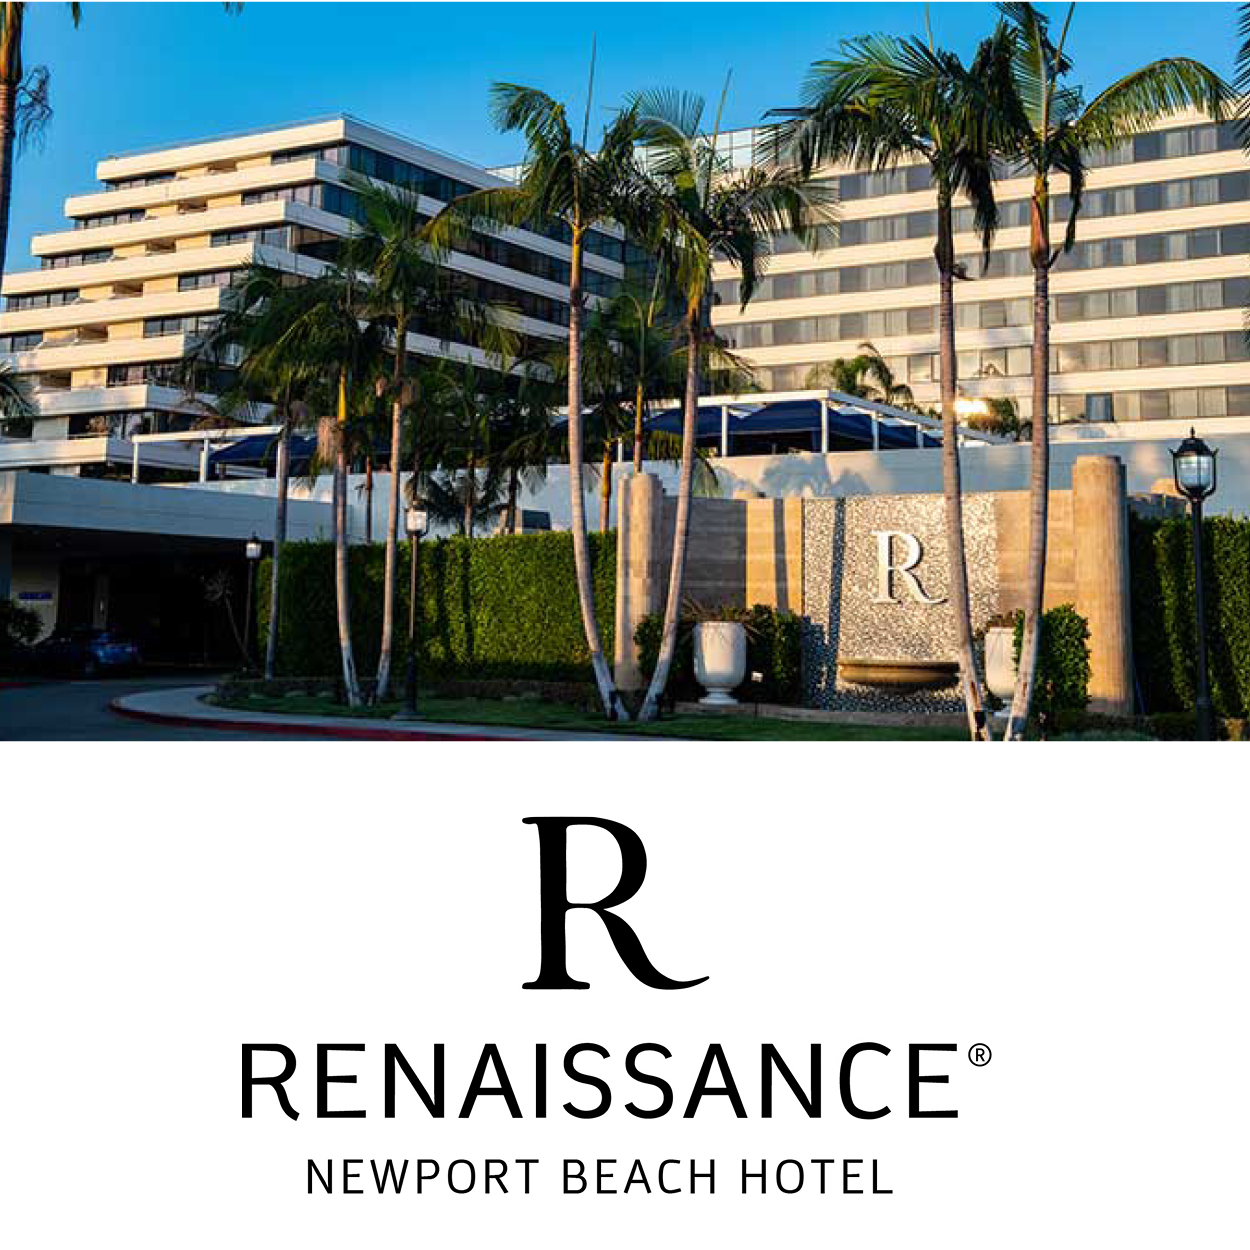 January Sunset Networking Mixer Renaissance Hotel Newport Beach